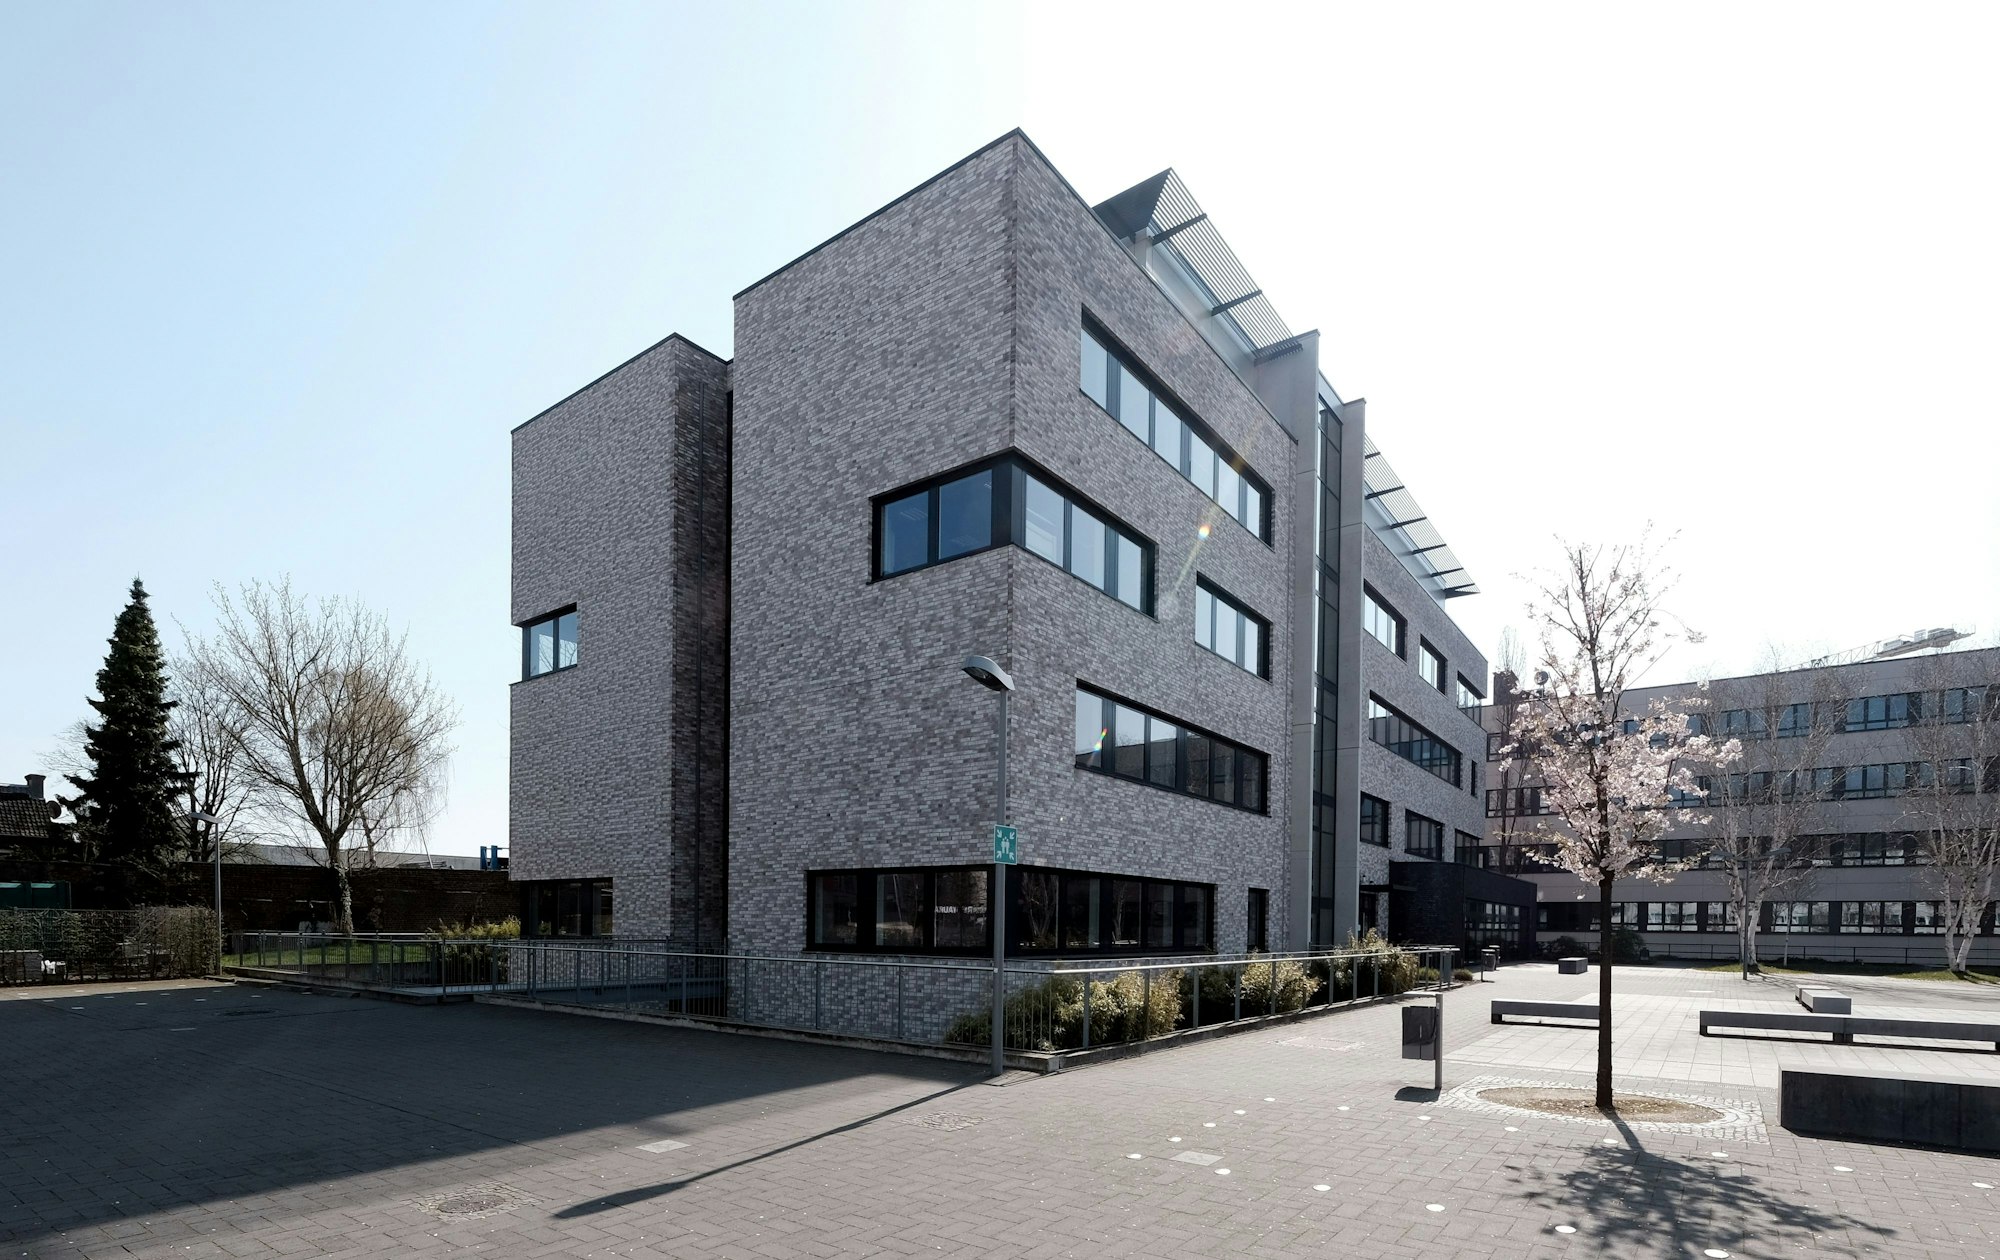 Rückkehr des Klinkers; Gebäude der Rheinischen Fachhochschule, Vogelsanger Strasse
Copyright: Max Grönert